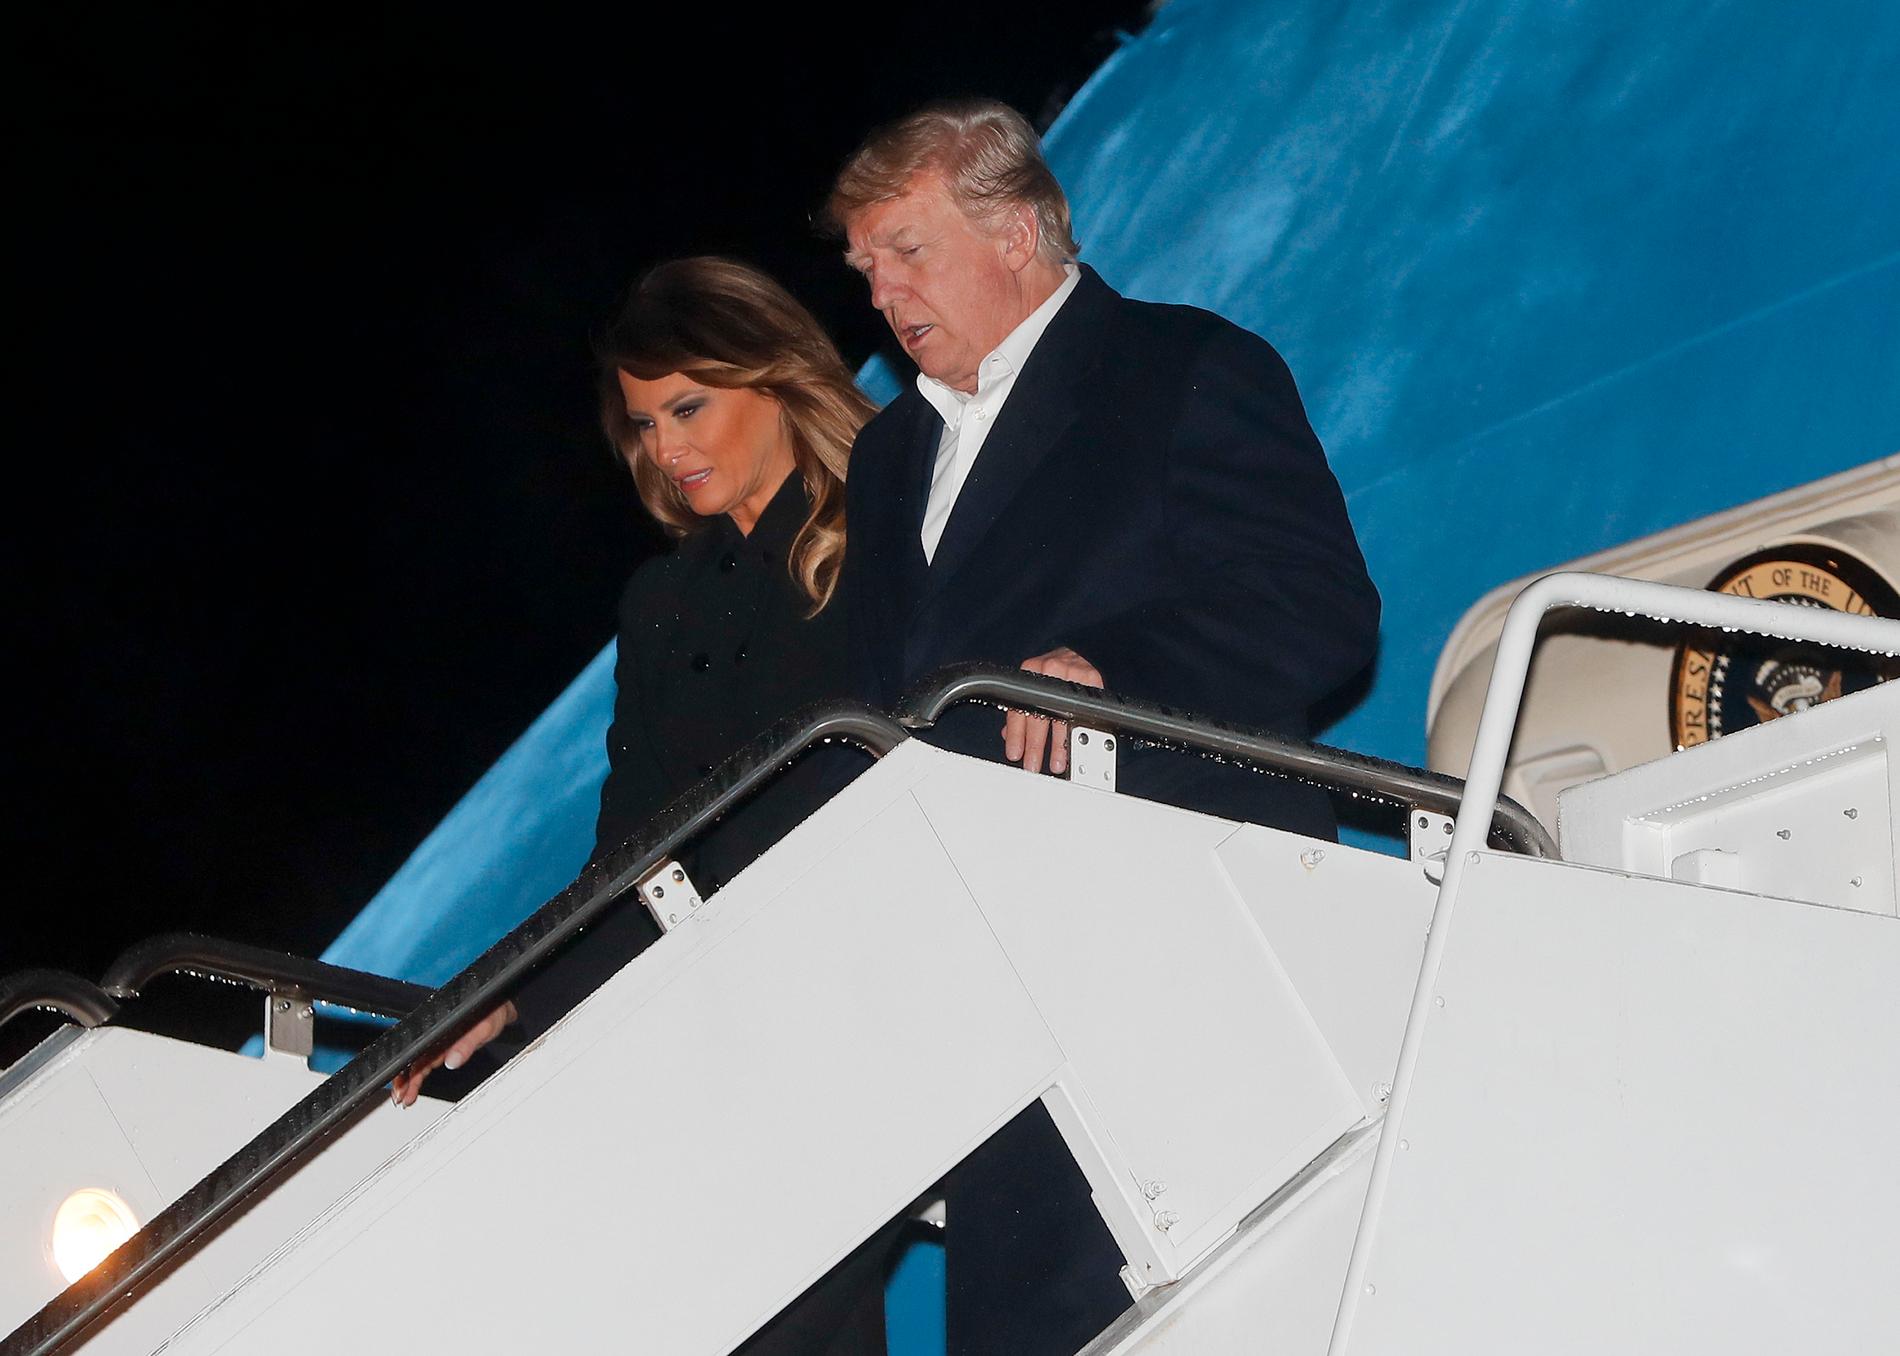 USA:s första dam Melania Trump tillsammans med maken och presidenten Donald Trump.